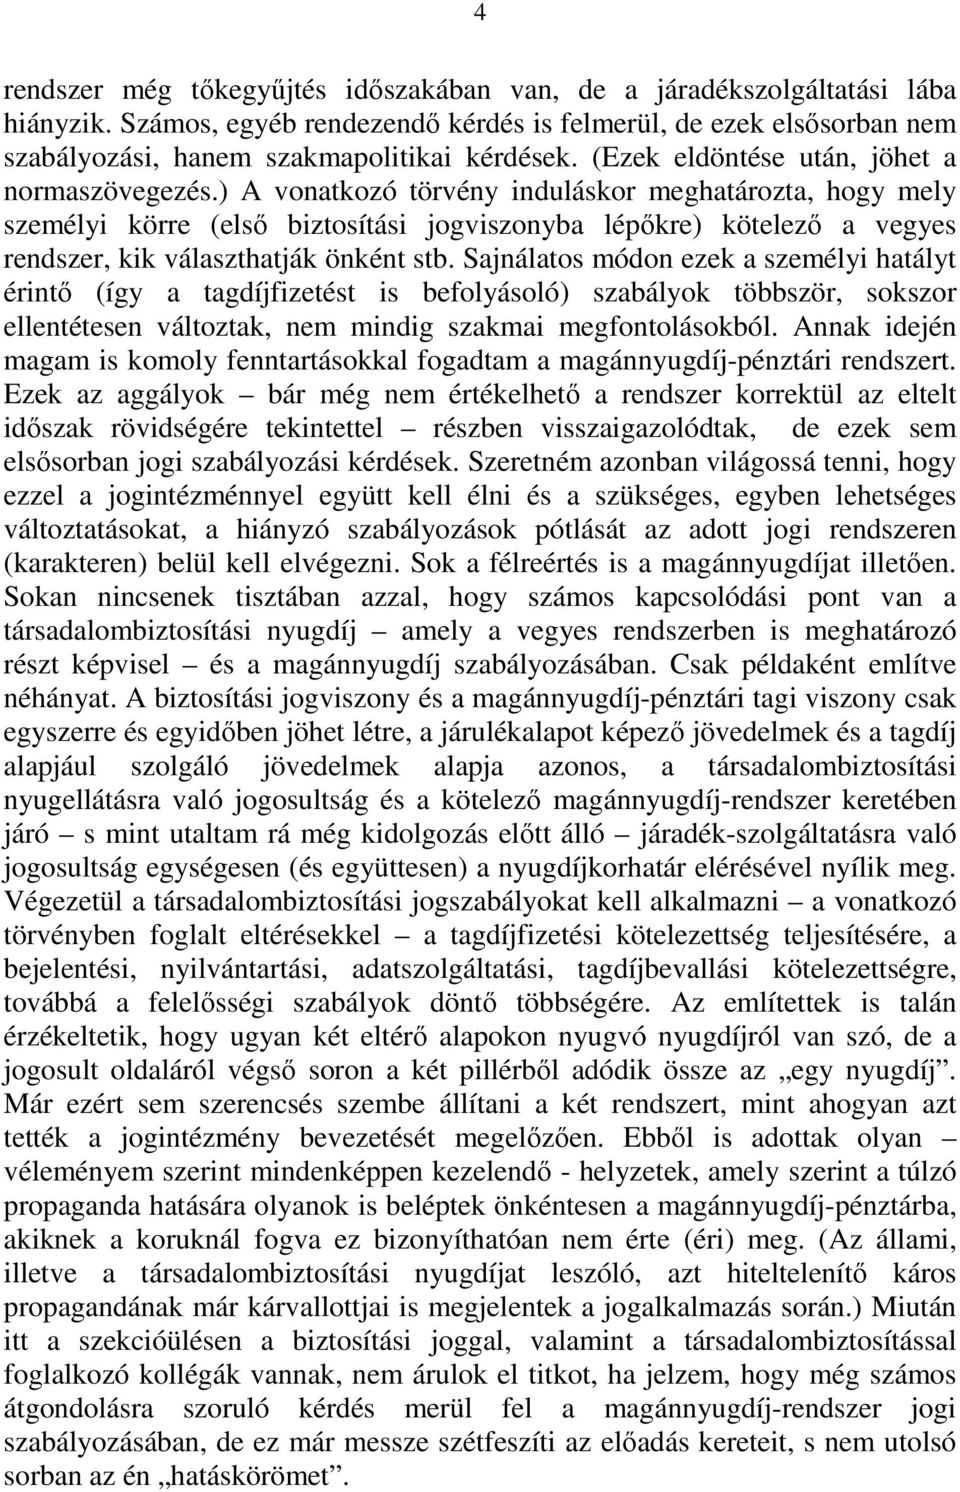 ) A vonatkozó törvény induláskor meghatározta, hogy mely személyi körre (elsı biztosítási jogviszonyba lépıkre) kötelezı a vegyes rendszer, kik választhatják önként stb.